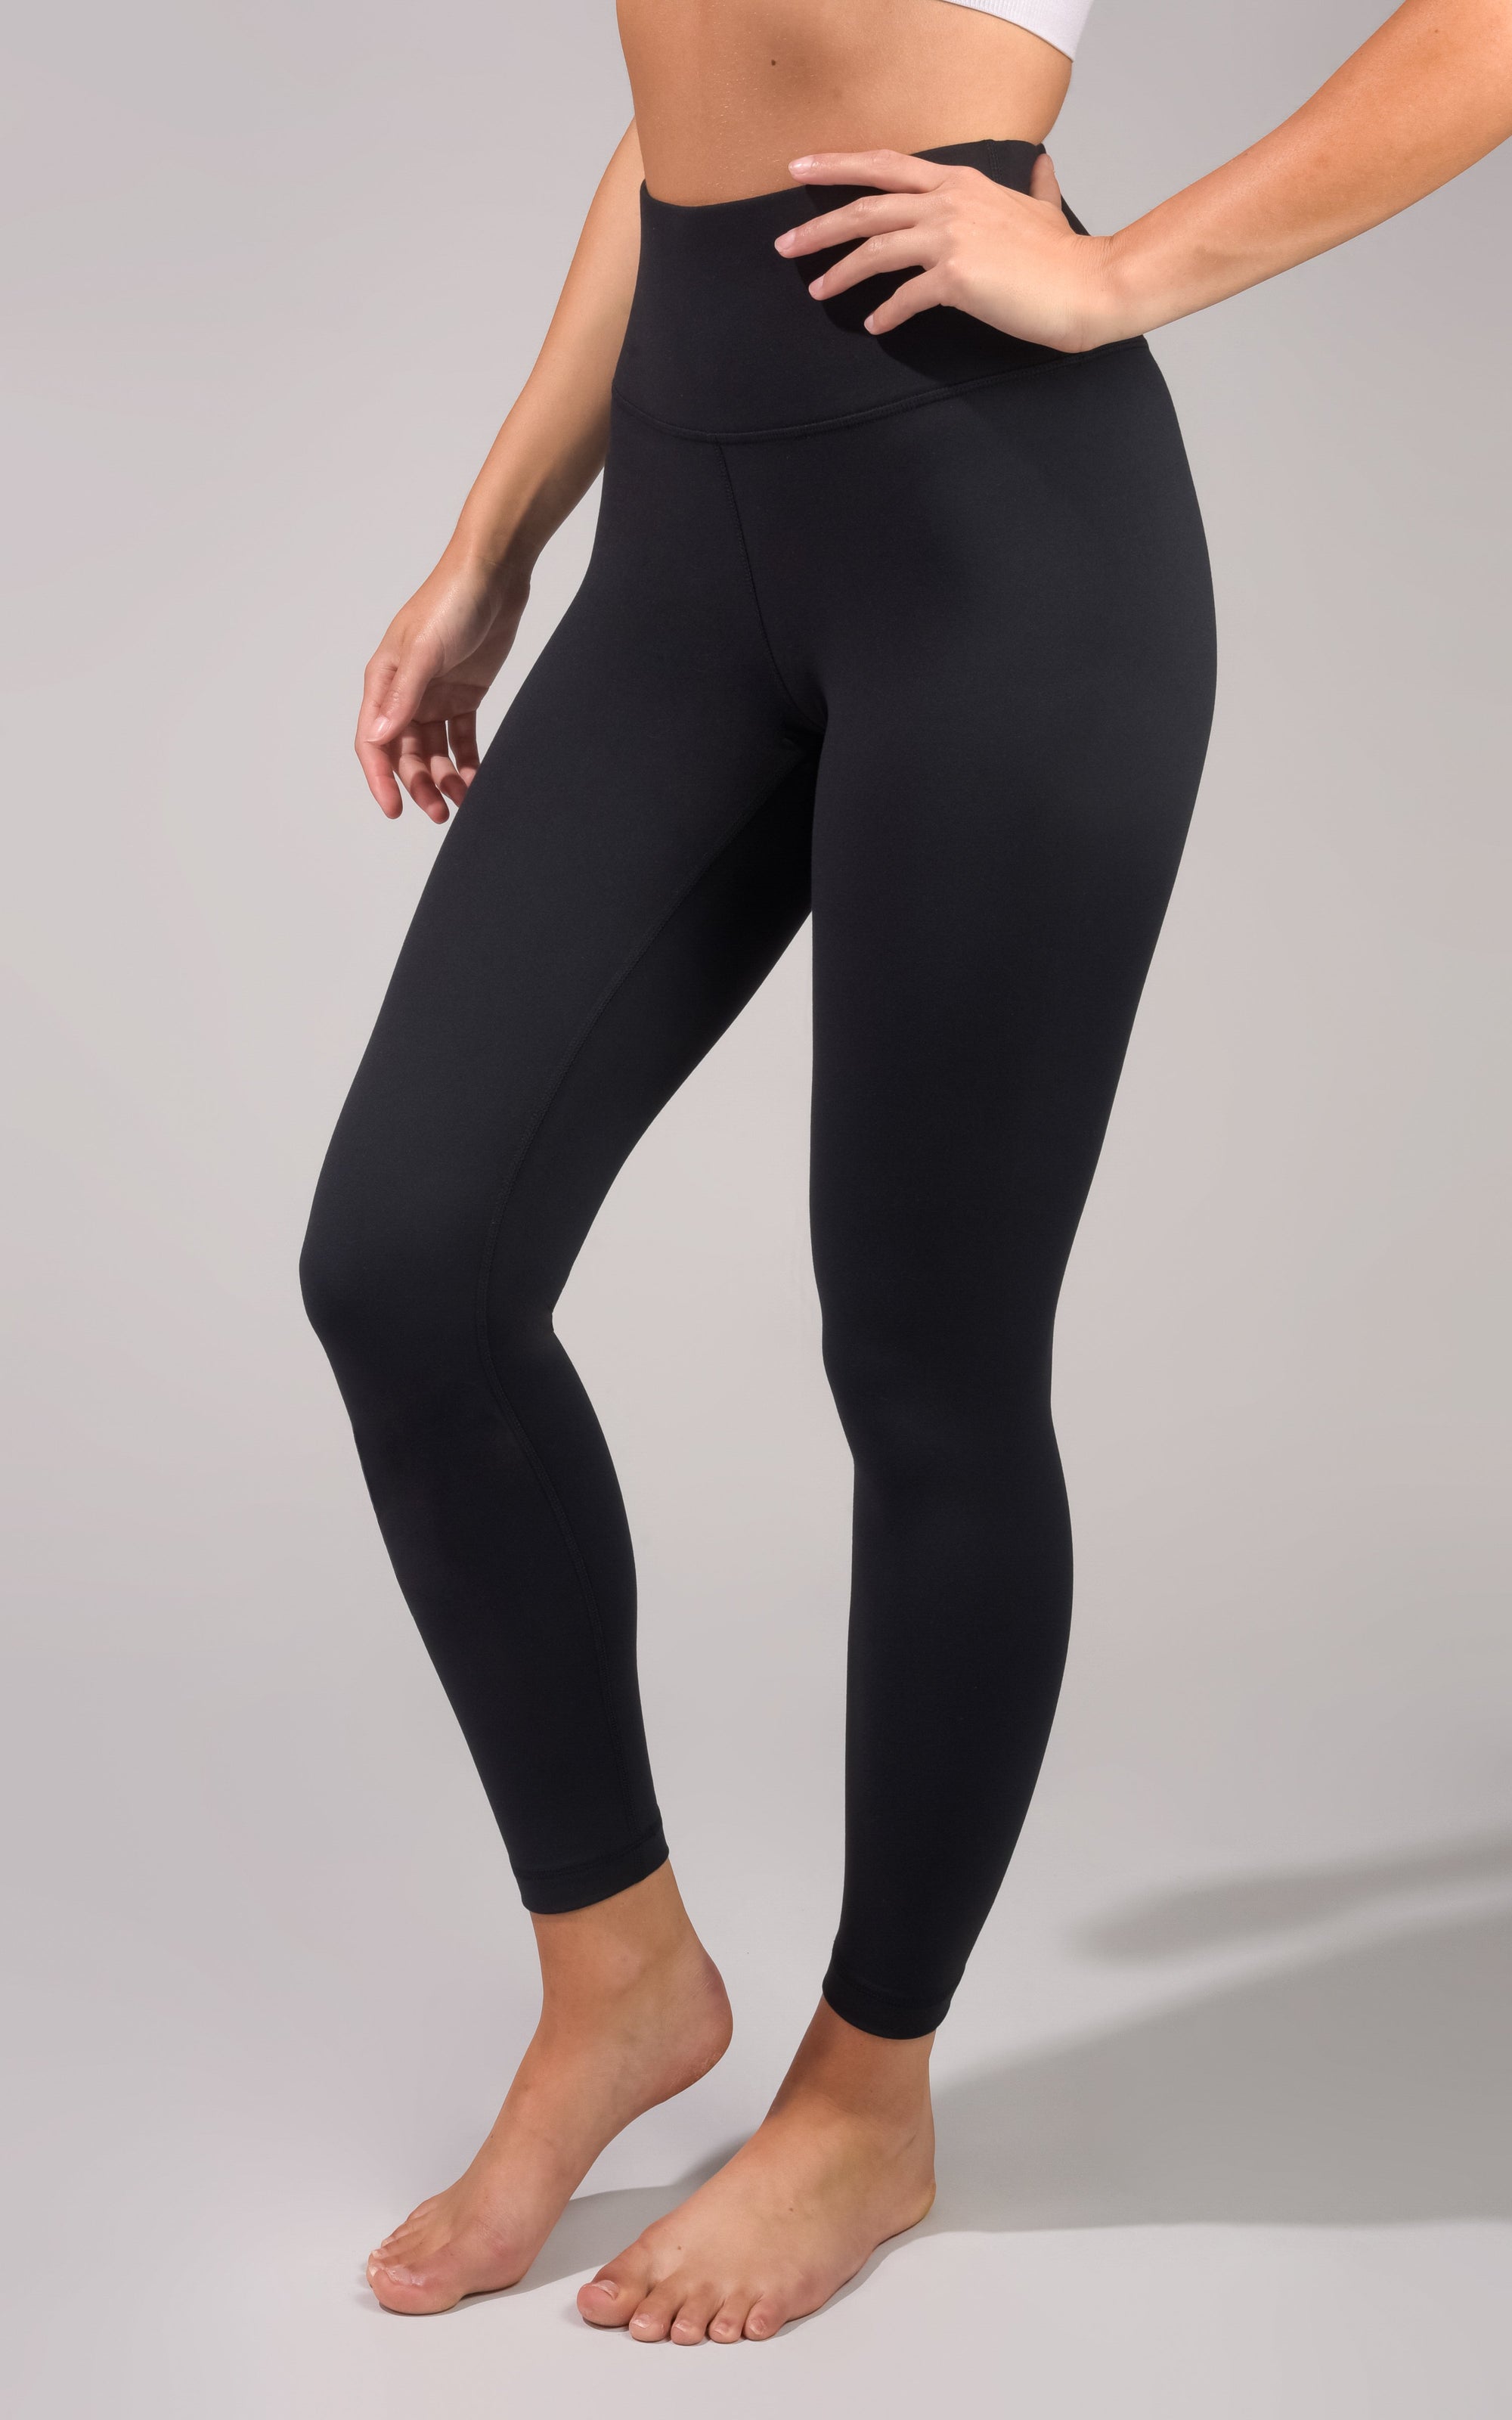 90 Degree by Reflex Women's Capri Leggings Black Size XS High